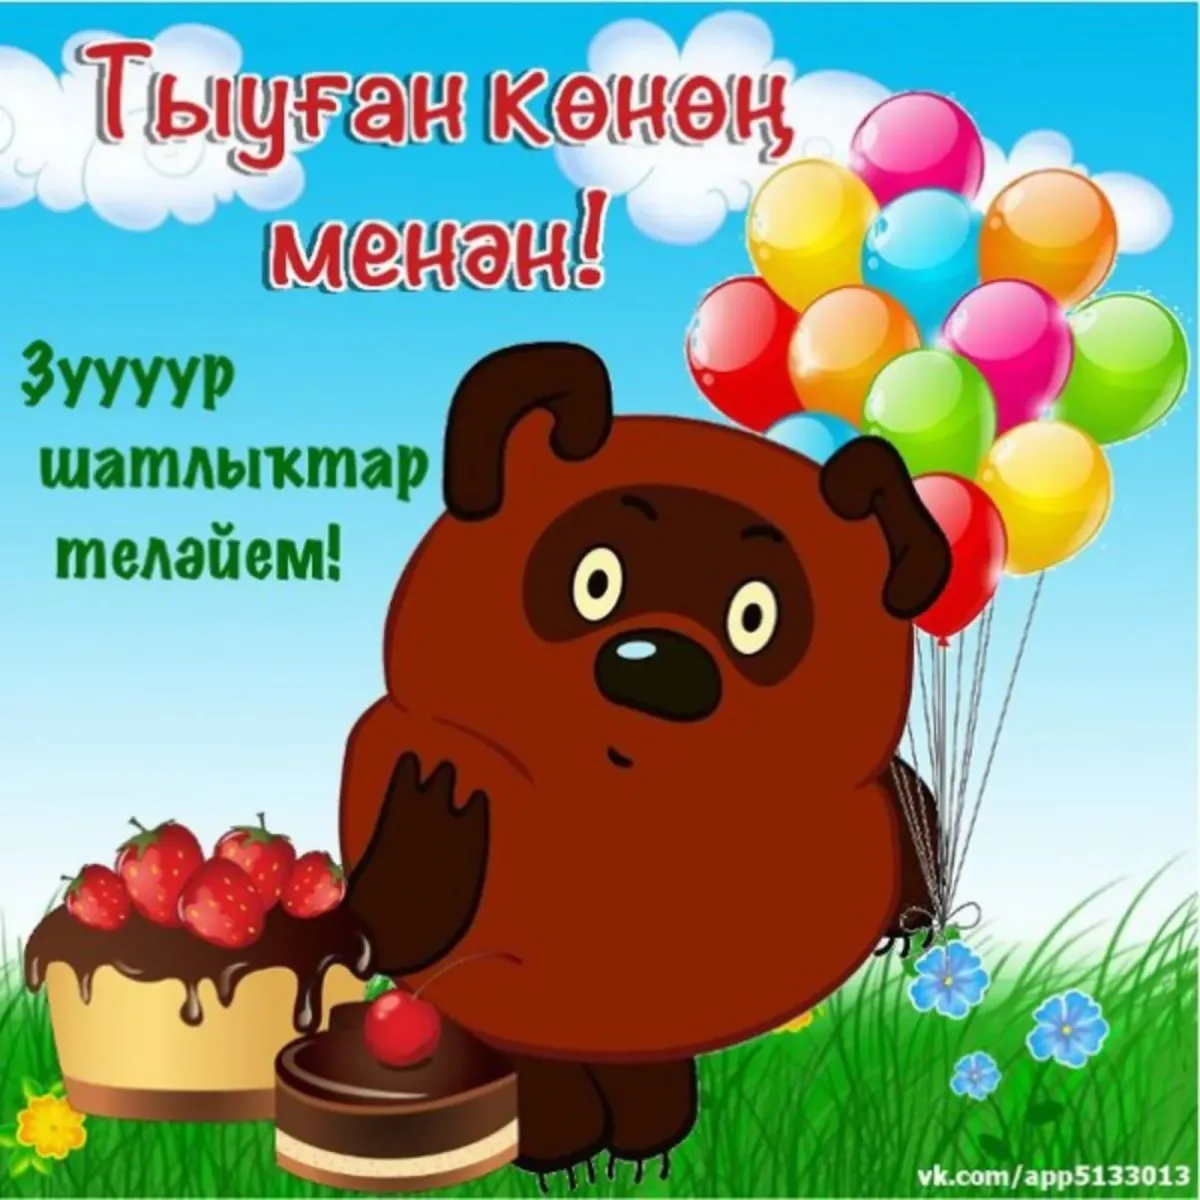 Поздравления башкирские открытки. Поздравления с днём рождения на башкирском языке. Башкирские пожелания на день рождения. Поздравления с днём рождения мужчине на башкирском языке. Поздравление с юбилеем на башкирском языке.